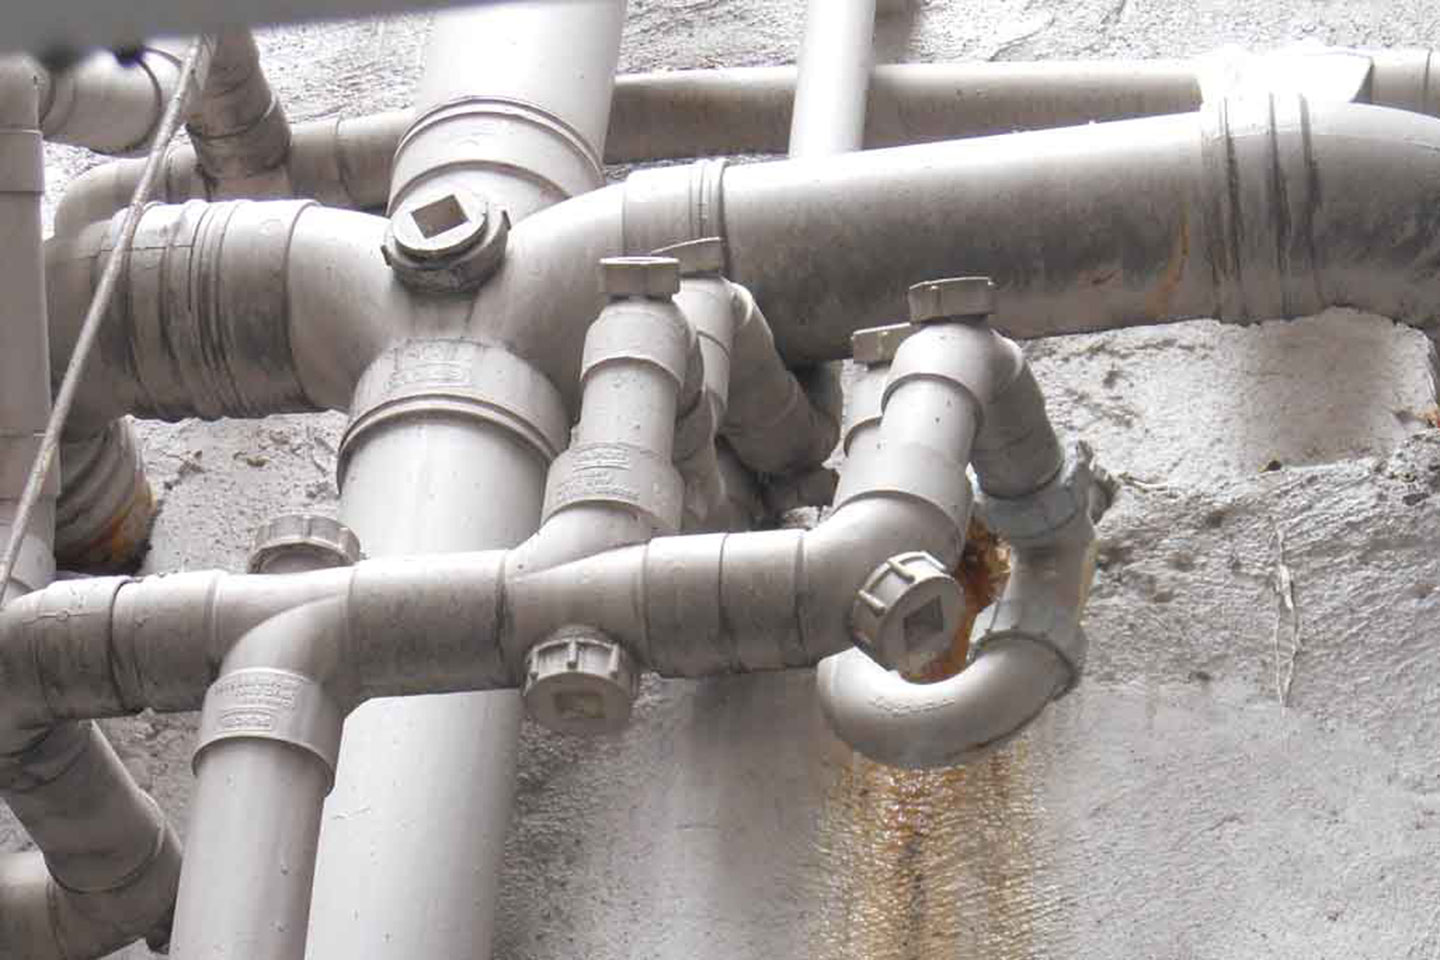 樓宇排水系統維修資助計劃